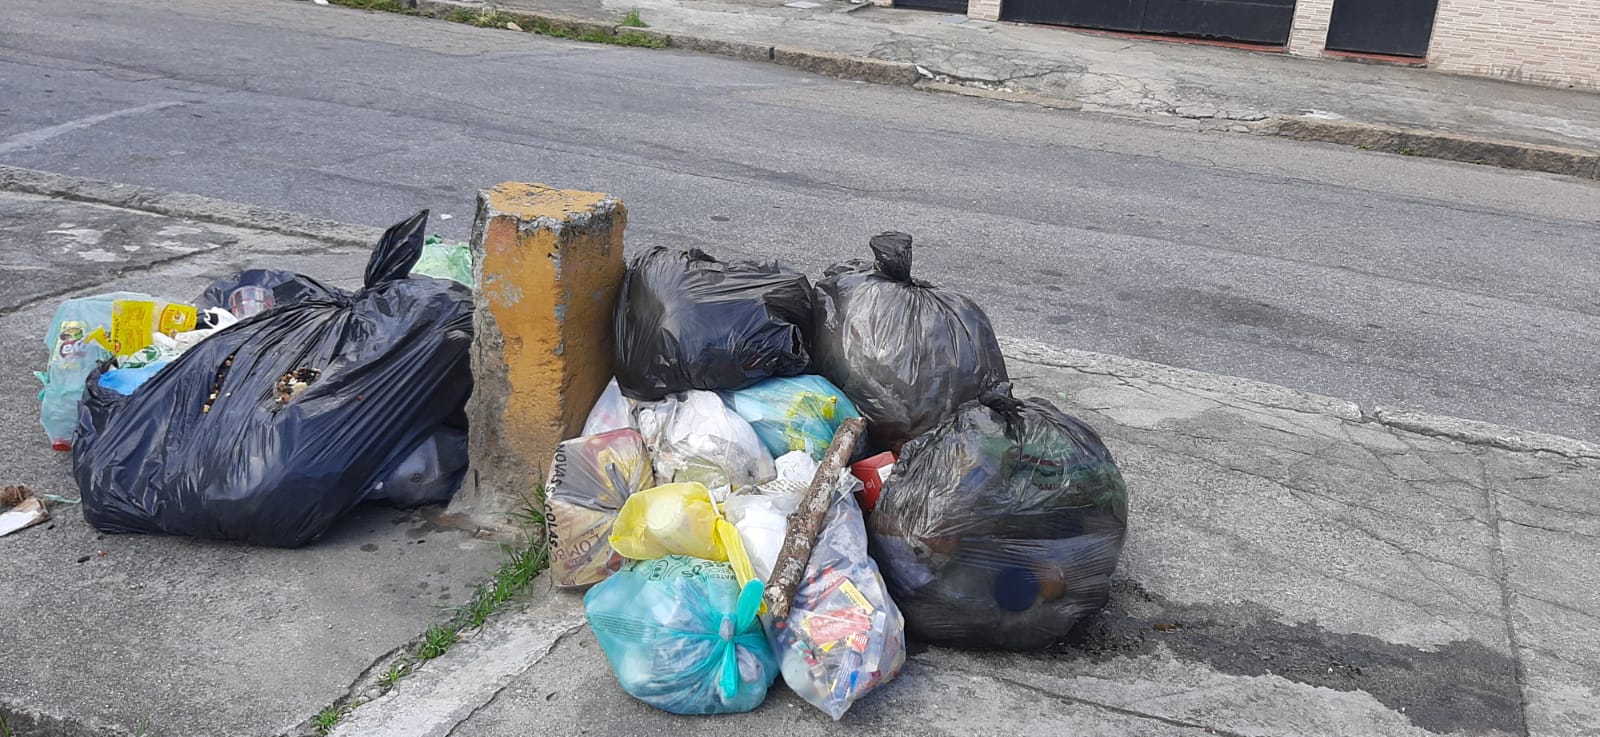 Falta de coleta de lixo causa transtornos em bairros da Zona Norte do Rio 